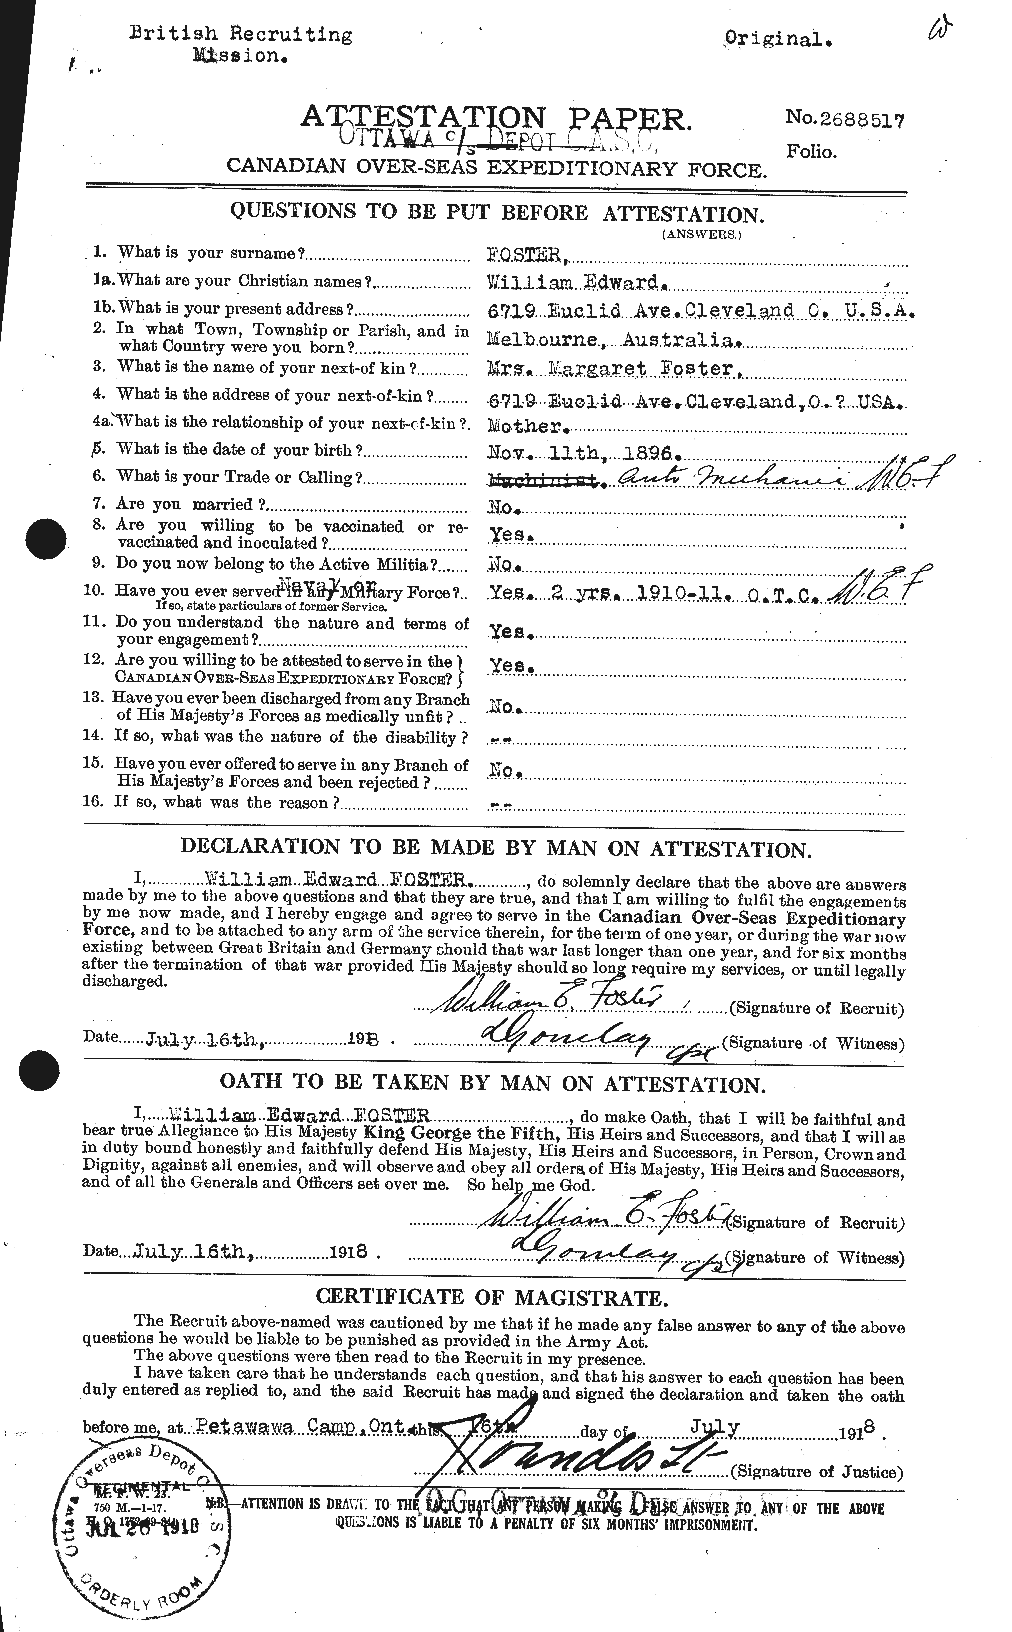 Dossiers du Personnel de la Première Guerre mondiale - CEC 328740a